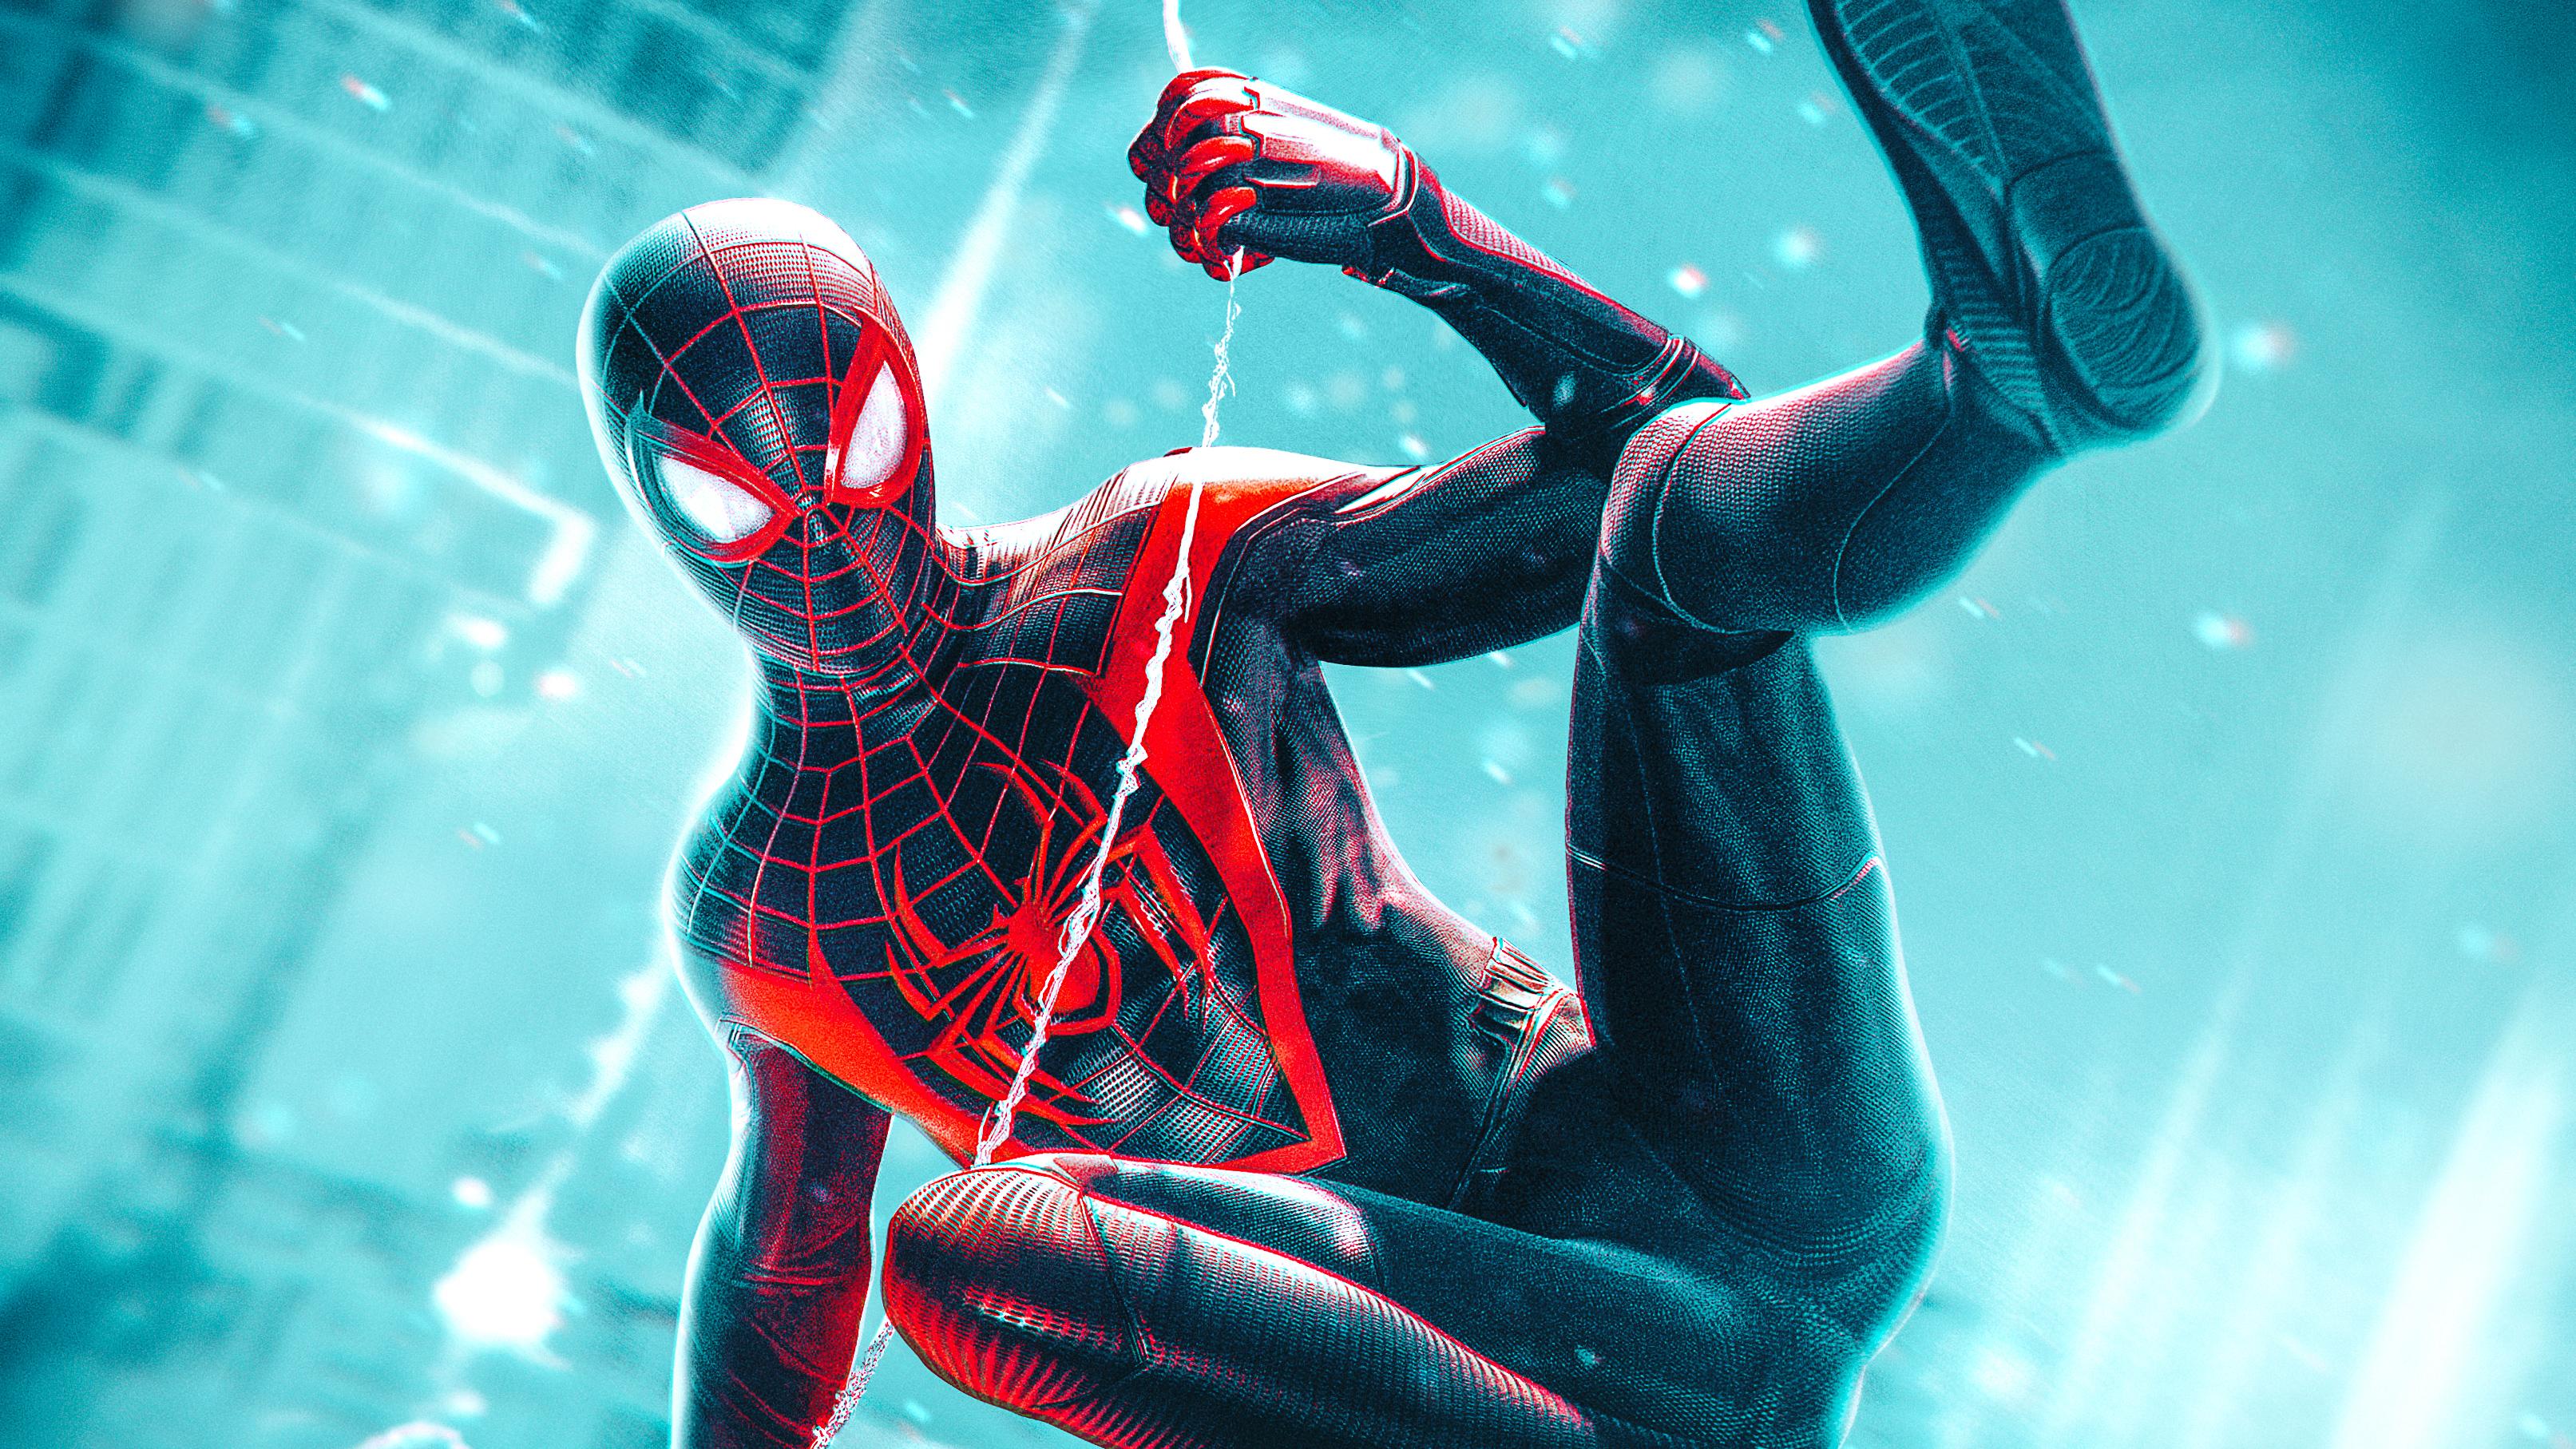 3226 x 1815 · jpeg - Marvel Spider Man Miles Morales 2020, HD Superheroes, 4k Wallpapers ...